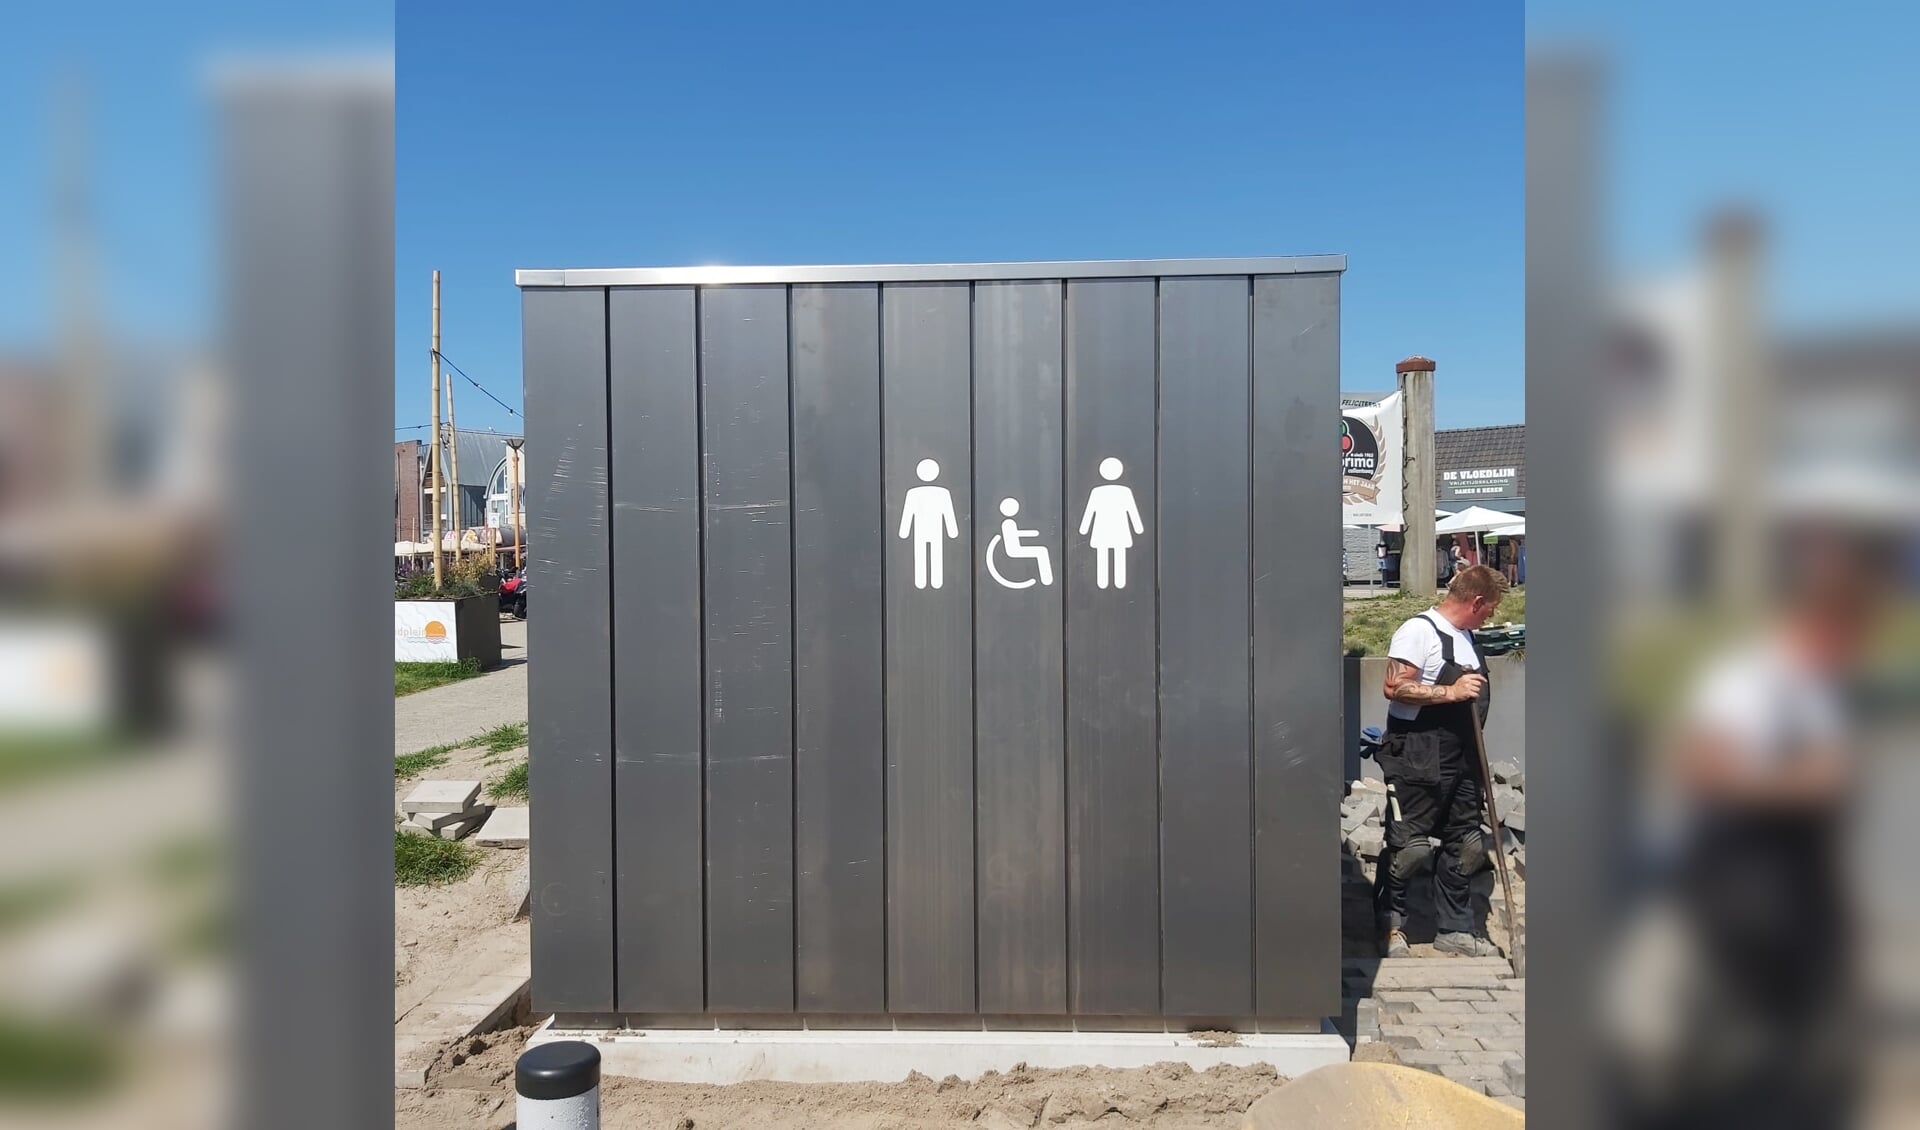 Het openbaar toilet in Callantsoog.